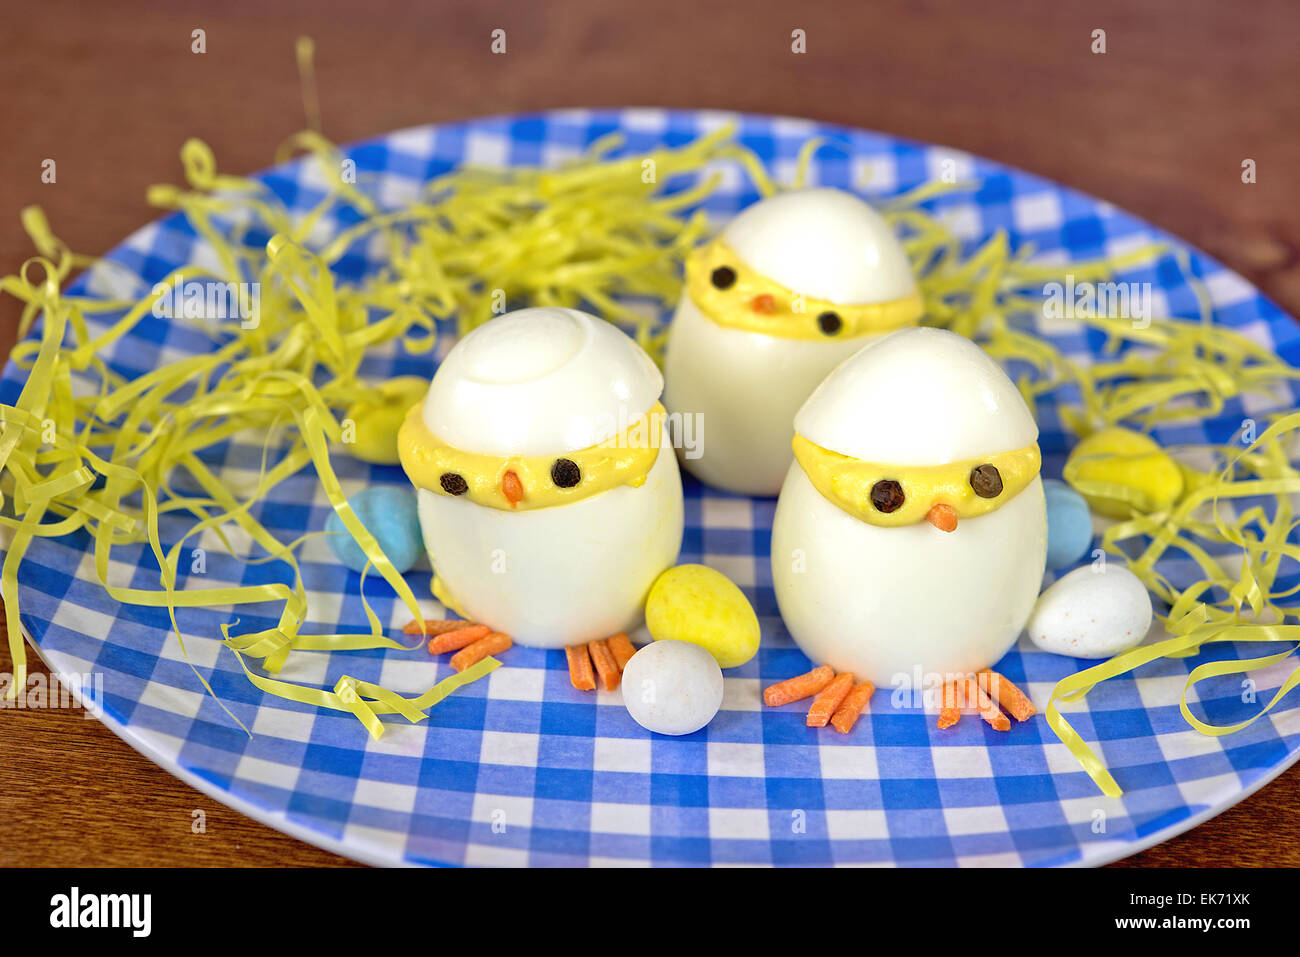 Ostern deviled Egg Küken mit Süßigkeiten Eiern und gelben Grases auf blau-weiß karierten Teller. Stockfoto